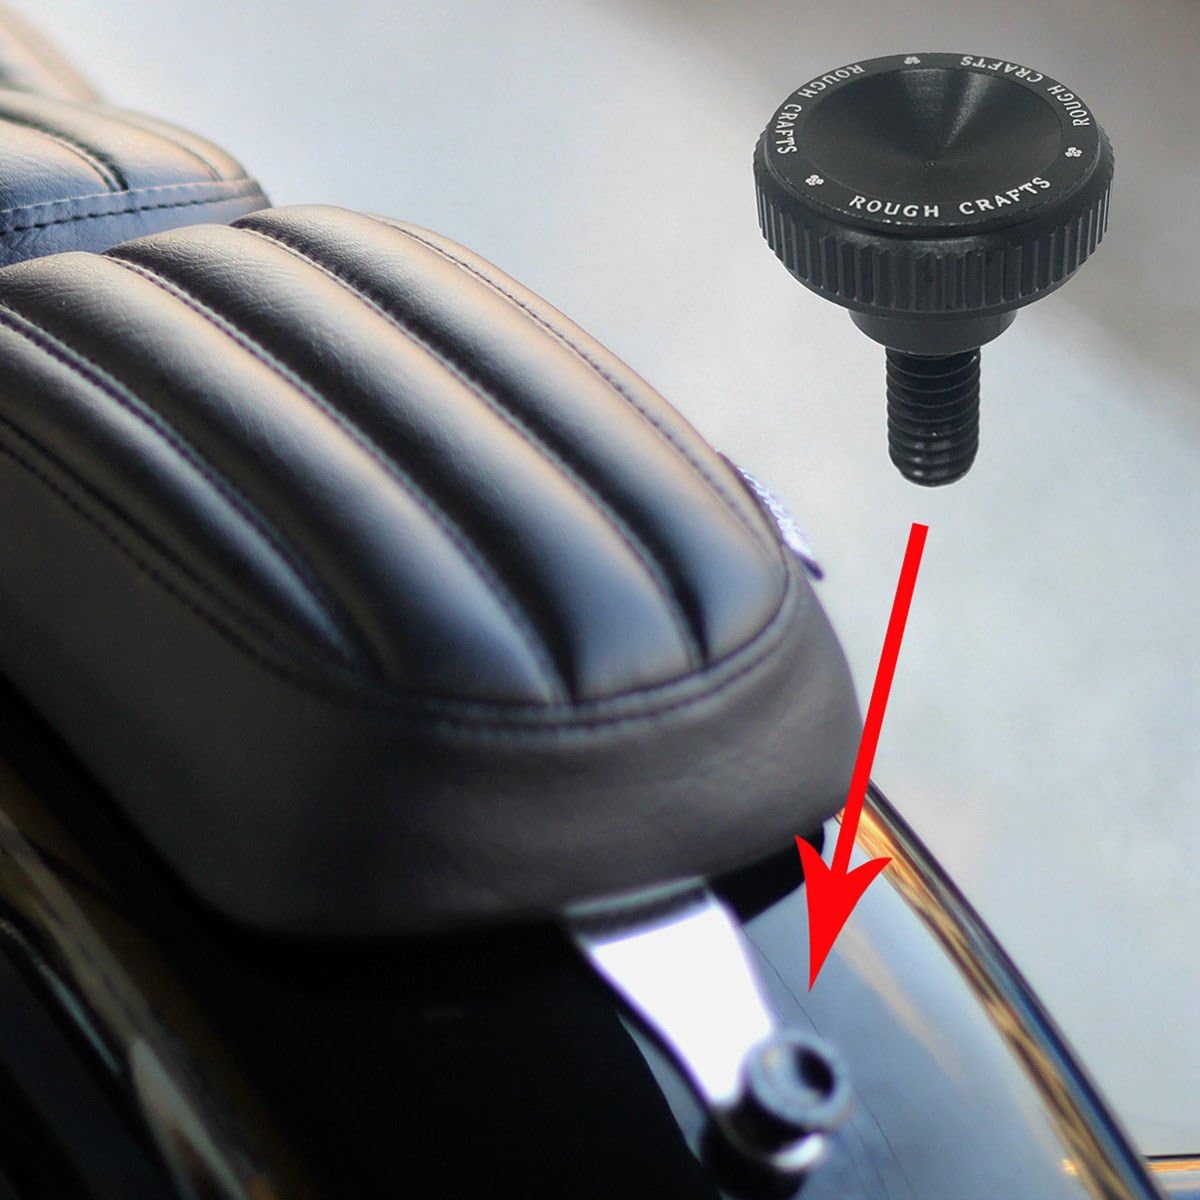 Seat Bolt for Harley Davidson - Black Billet Aluminum Hard Anodized Screw - Black Billet Aluminum Seat Bolt Review